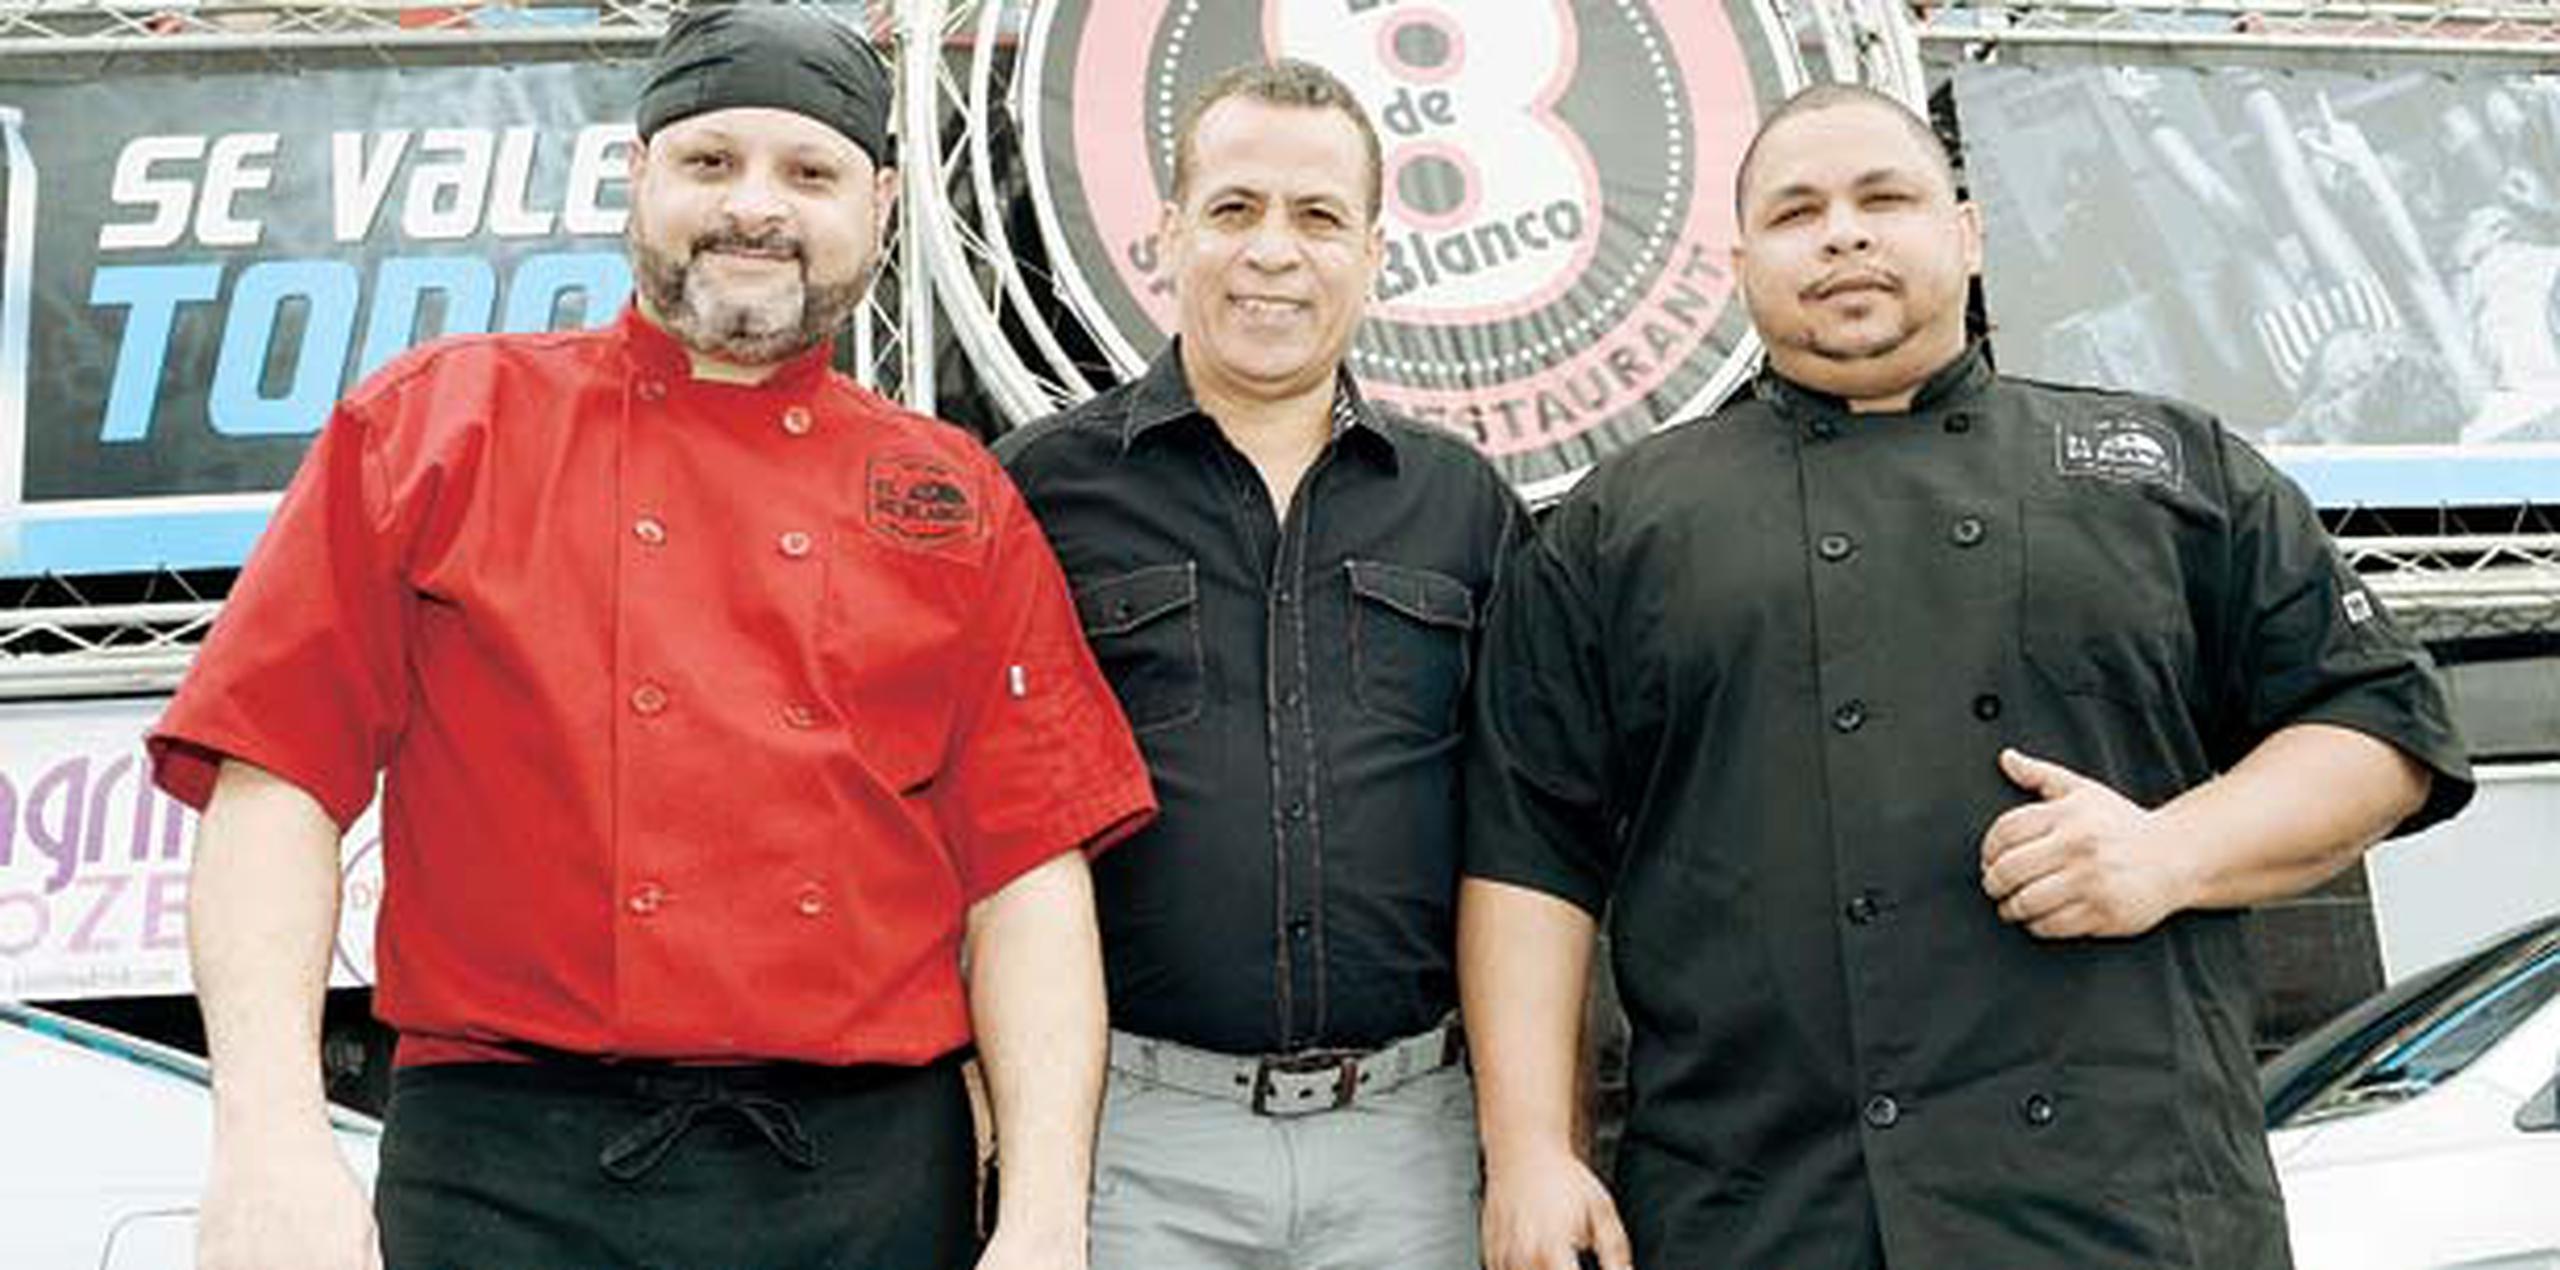 De izquierda a derecha José Díaz, Rafael “Sifo” Blanco y Eddie Greullón. (gerald.lopez@gfrmedia.com)